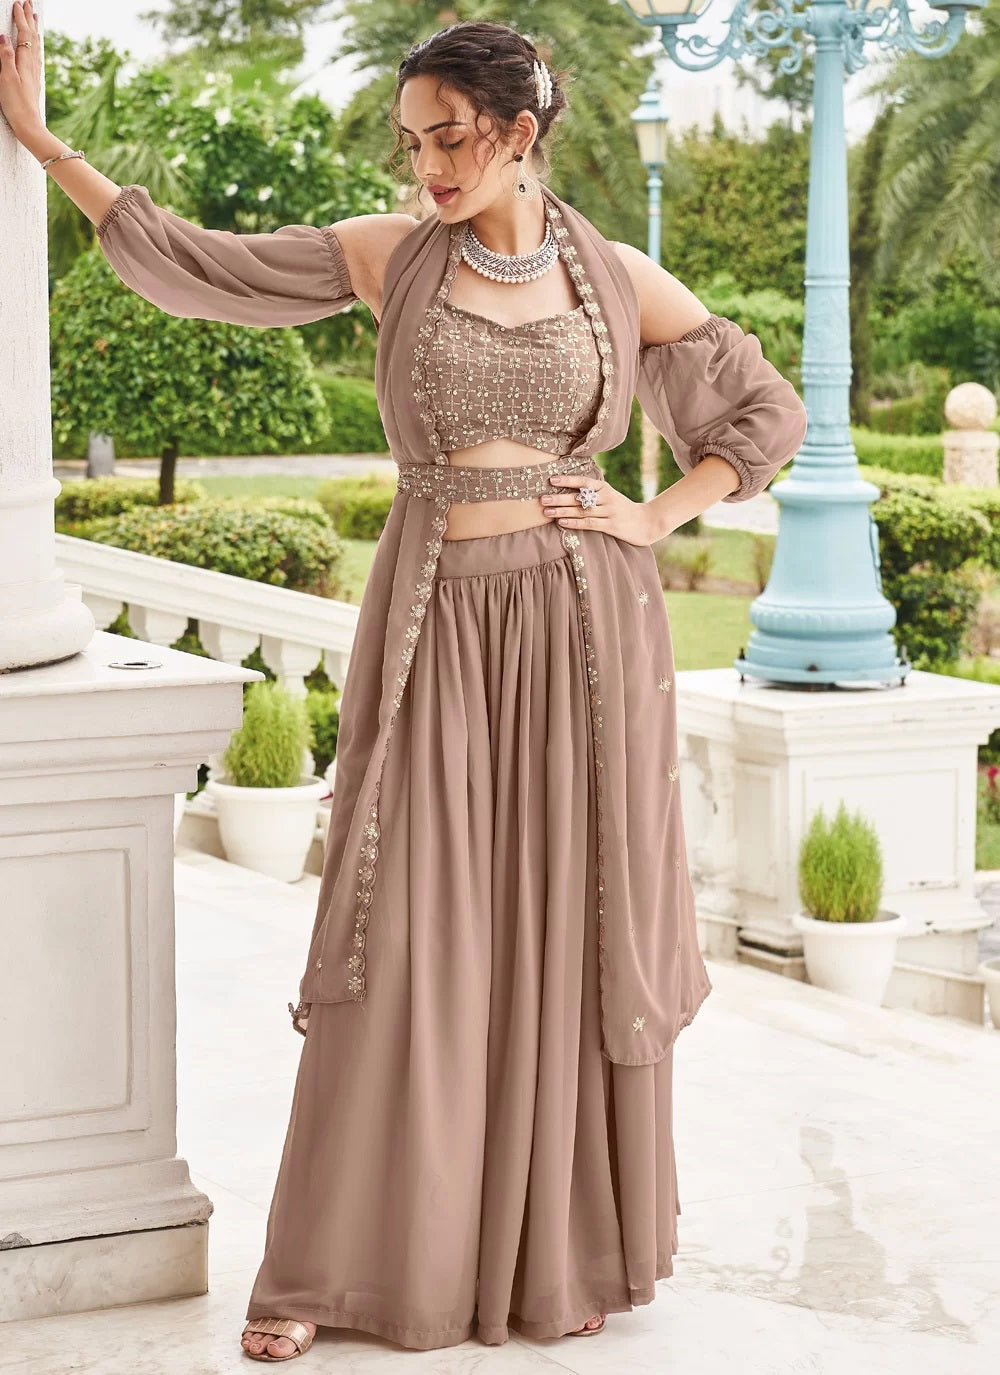 Georgette Choli cut Ladies Fancy Blouse, Size: 36 at Rs 750/piece